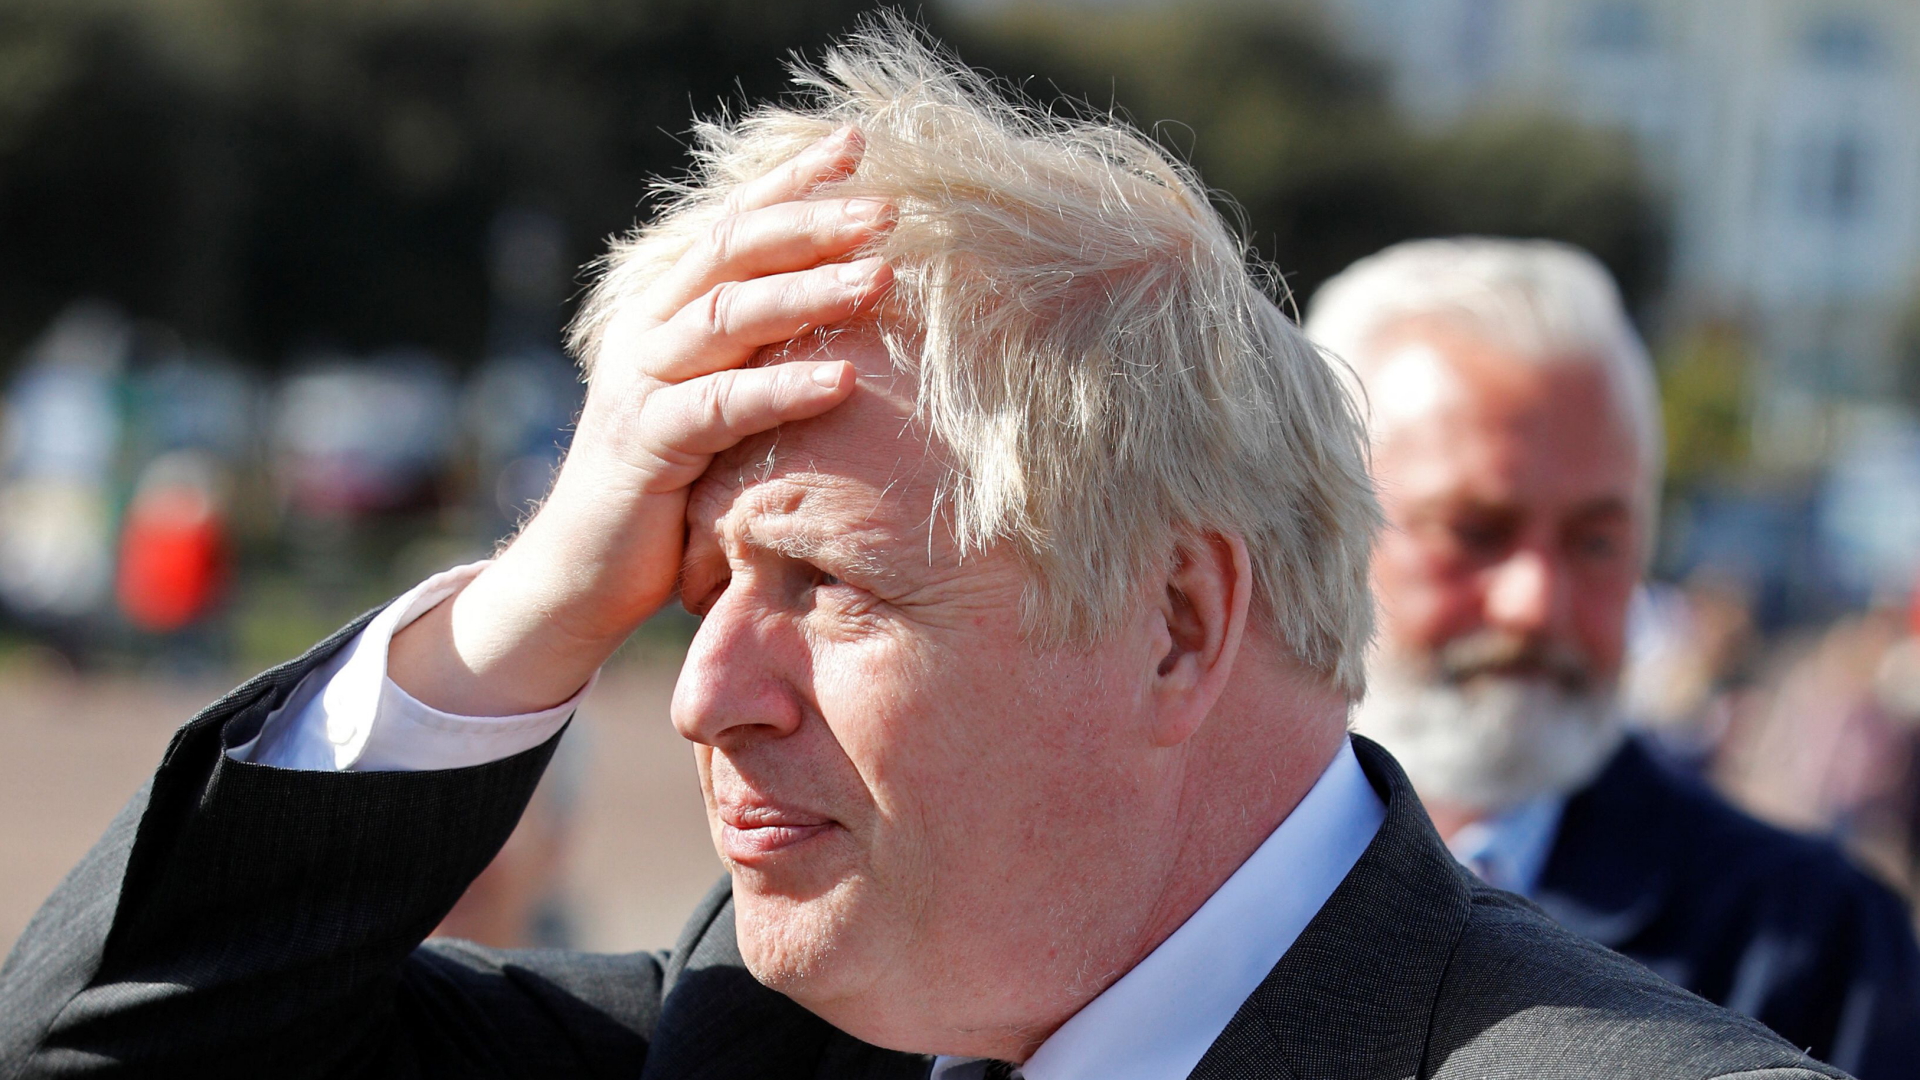 Boris Johnson fasst sich während eines Wahlkampfauftritts an den Kopf | AFP